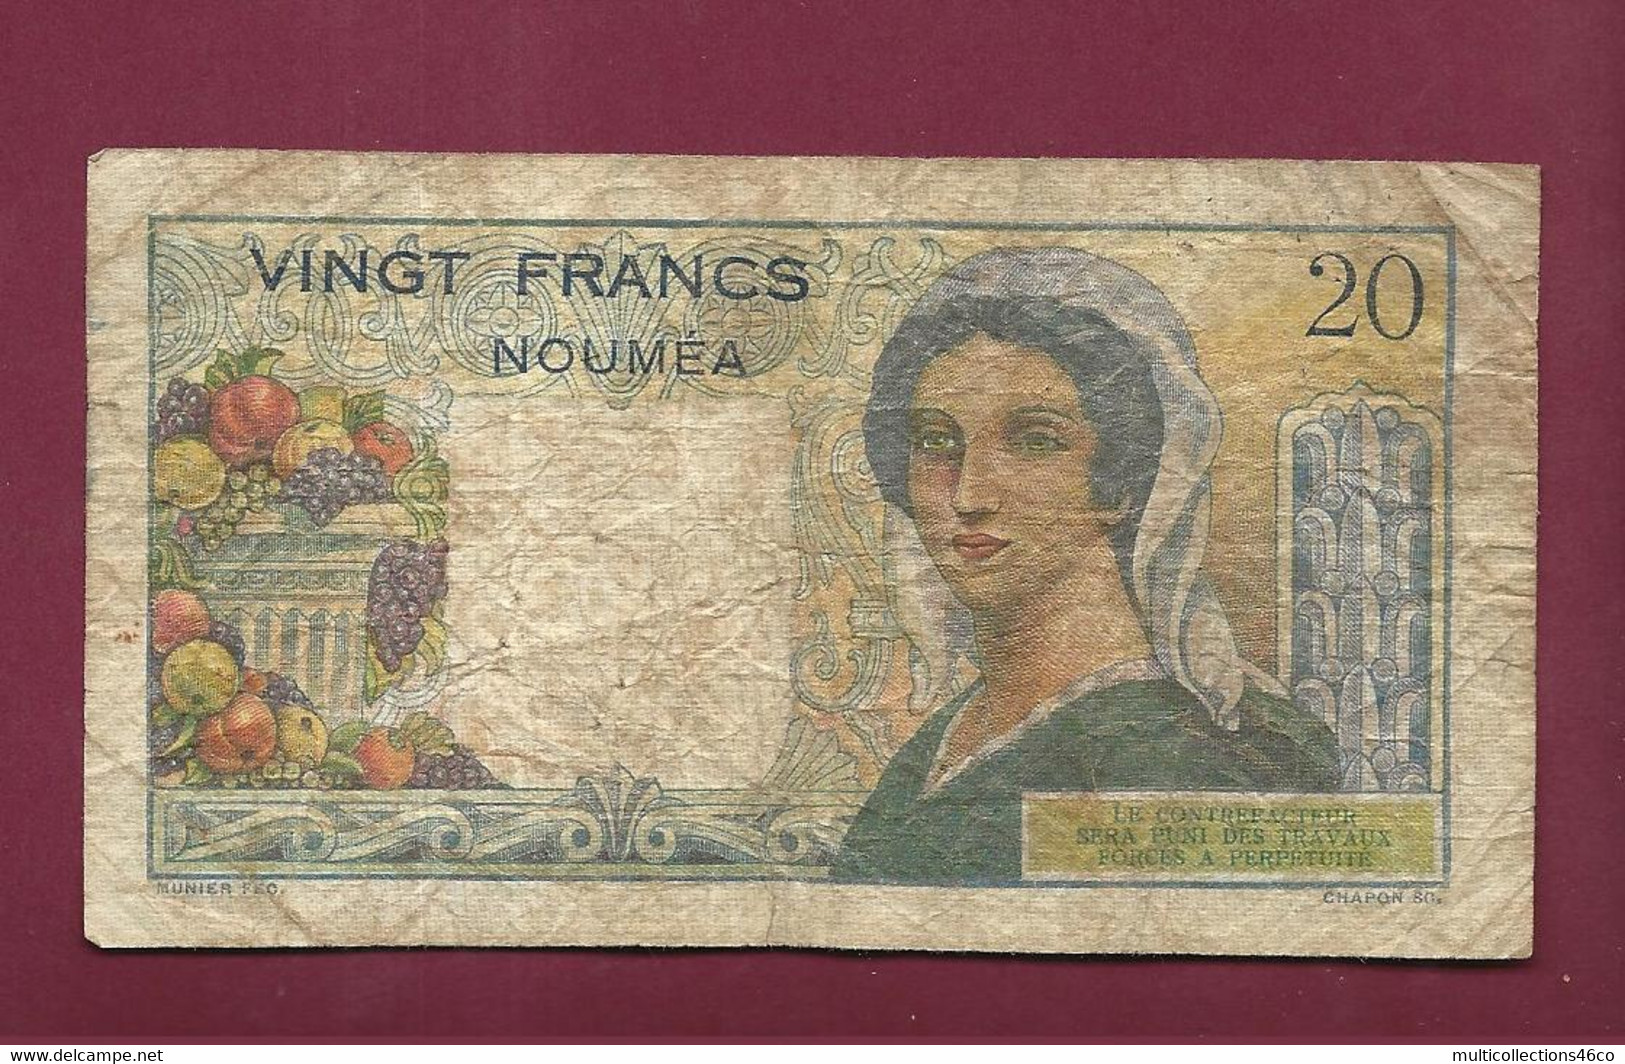 130222 - Billet BANQUE DE L'INDOCHINE NOUMEA Vingt 20 Francs - Plis Taches Petits Trous - Nouméa (Neukaledonien 1873-1985)